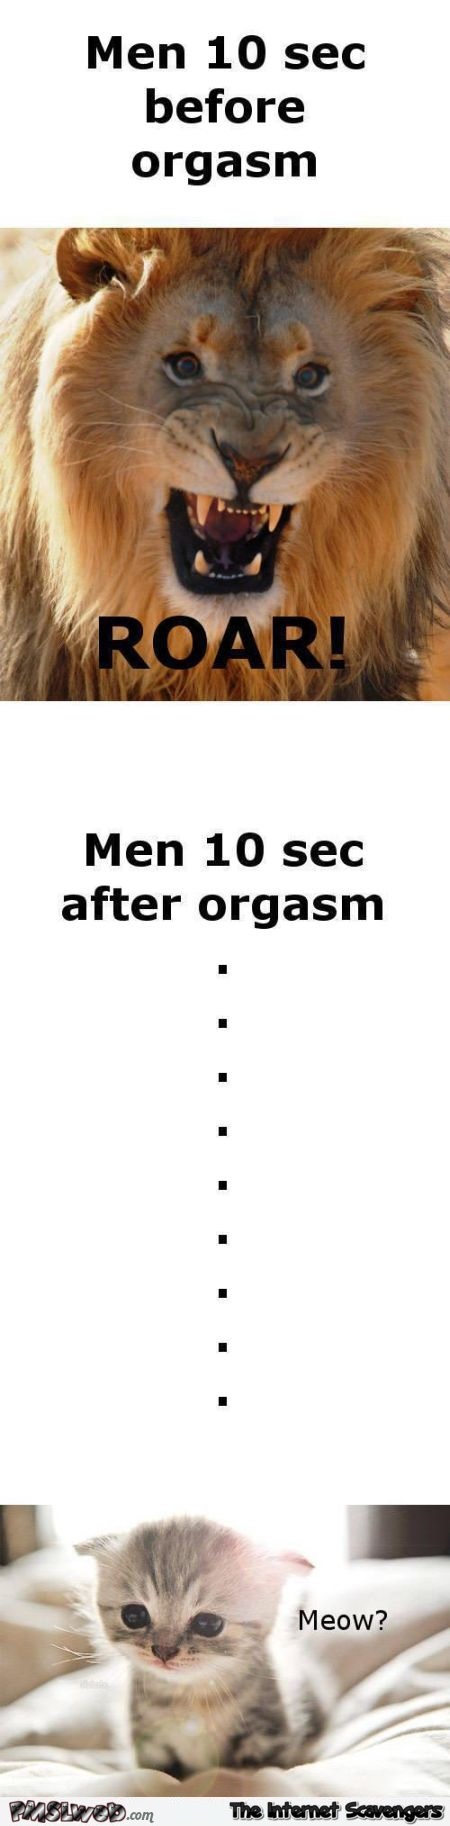 Funny men before vs after orgasm @PMSLweb.com